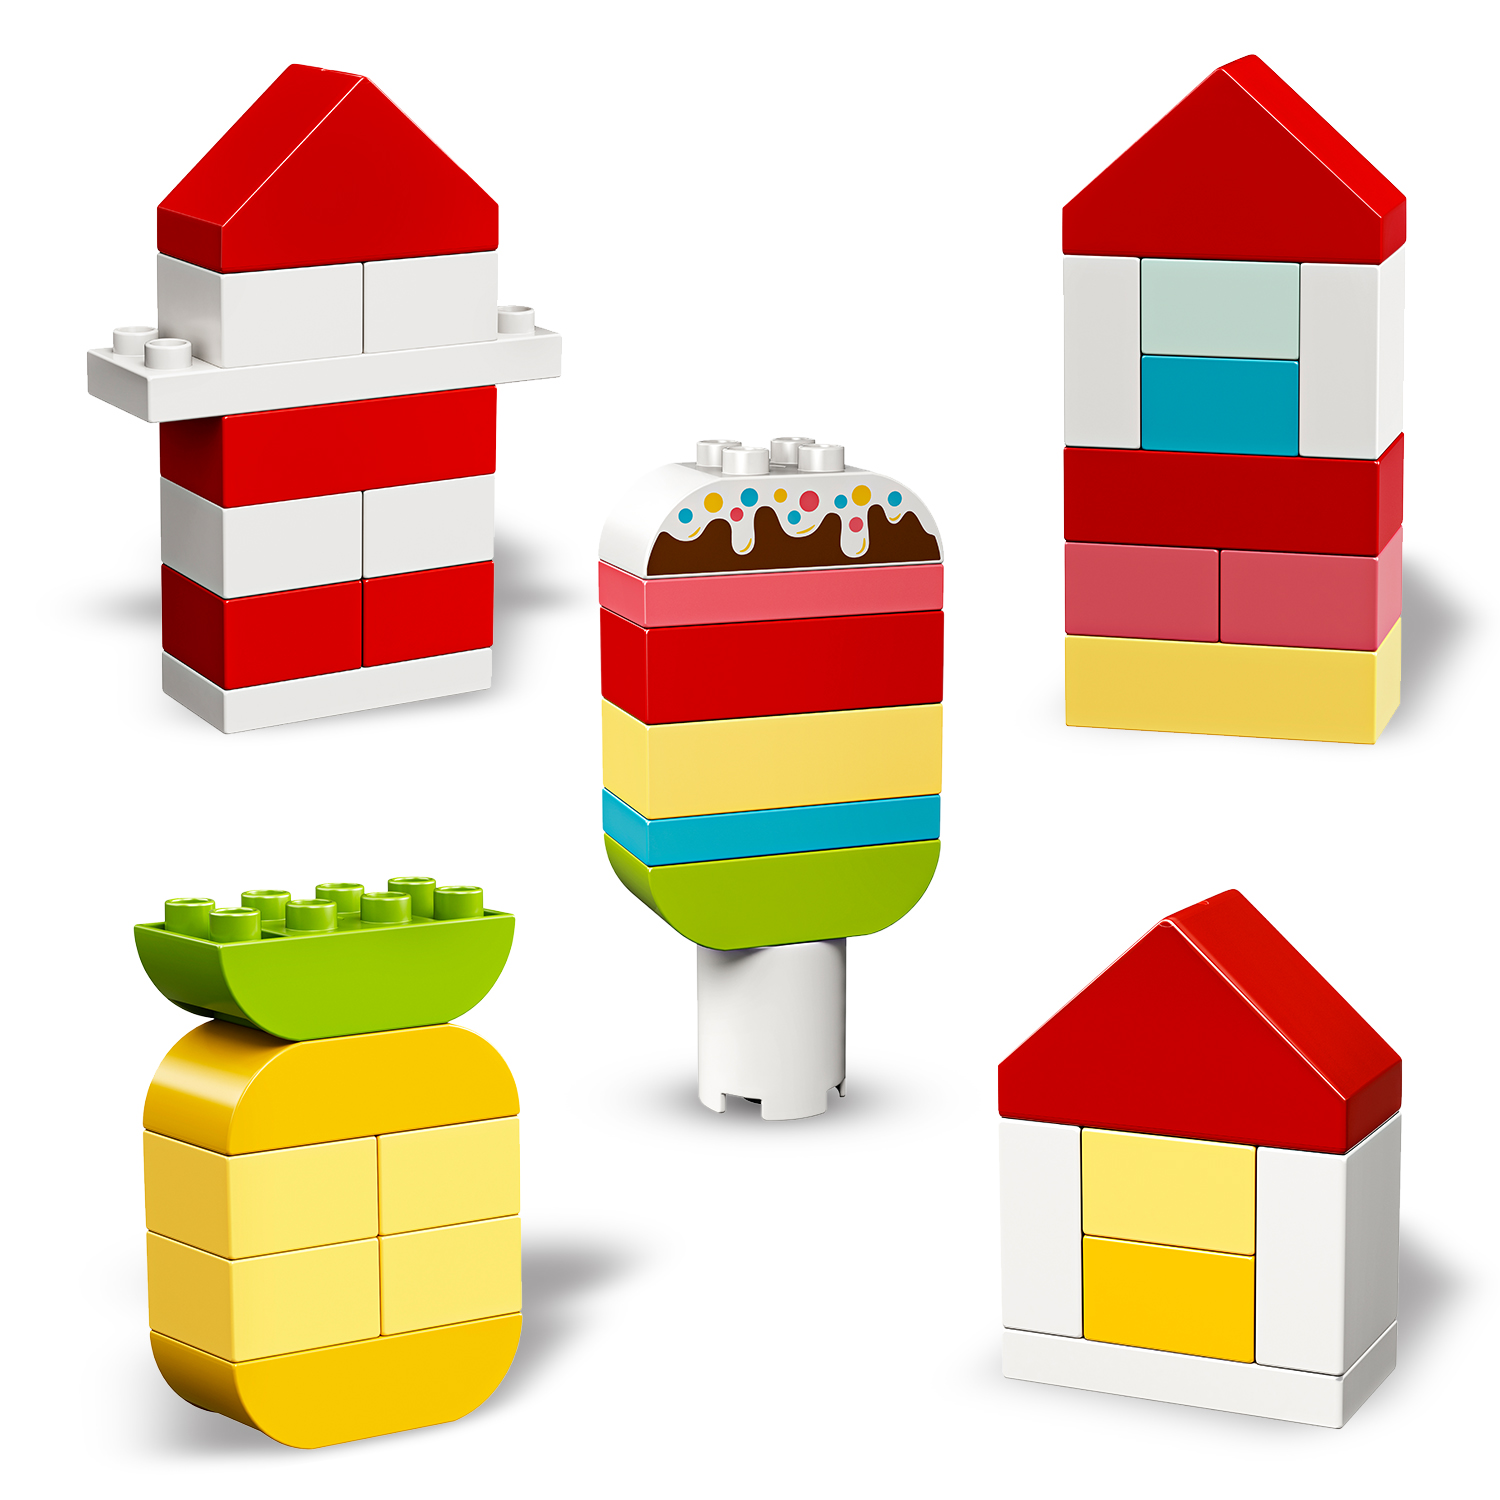 LEGO DUPLO Mein 10909 Bausatz, erster Bauspaß Mehrfarbig